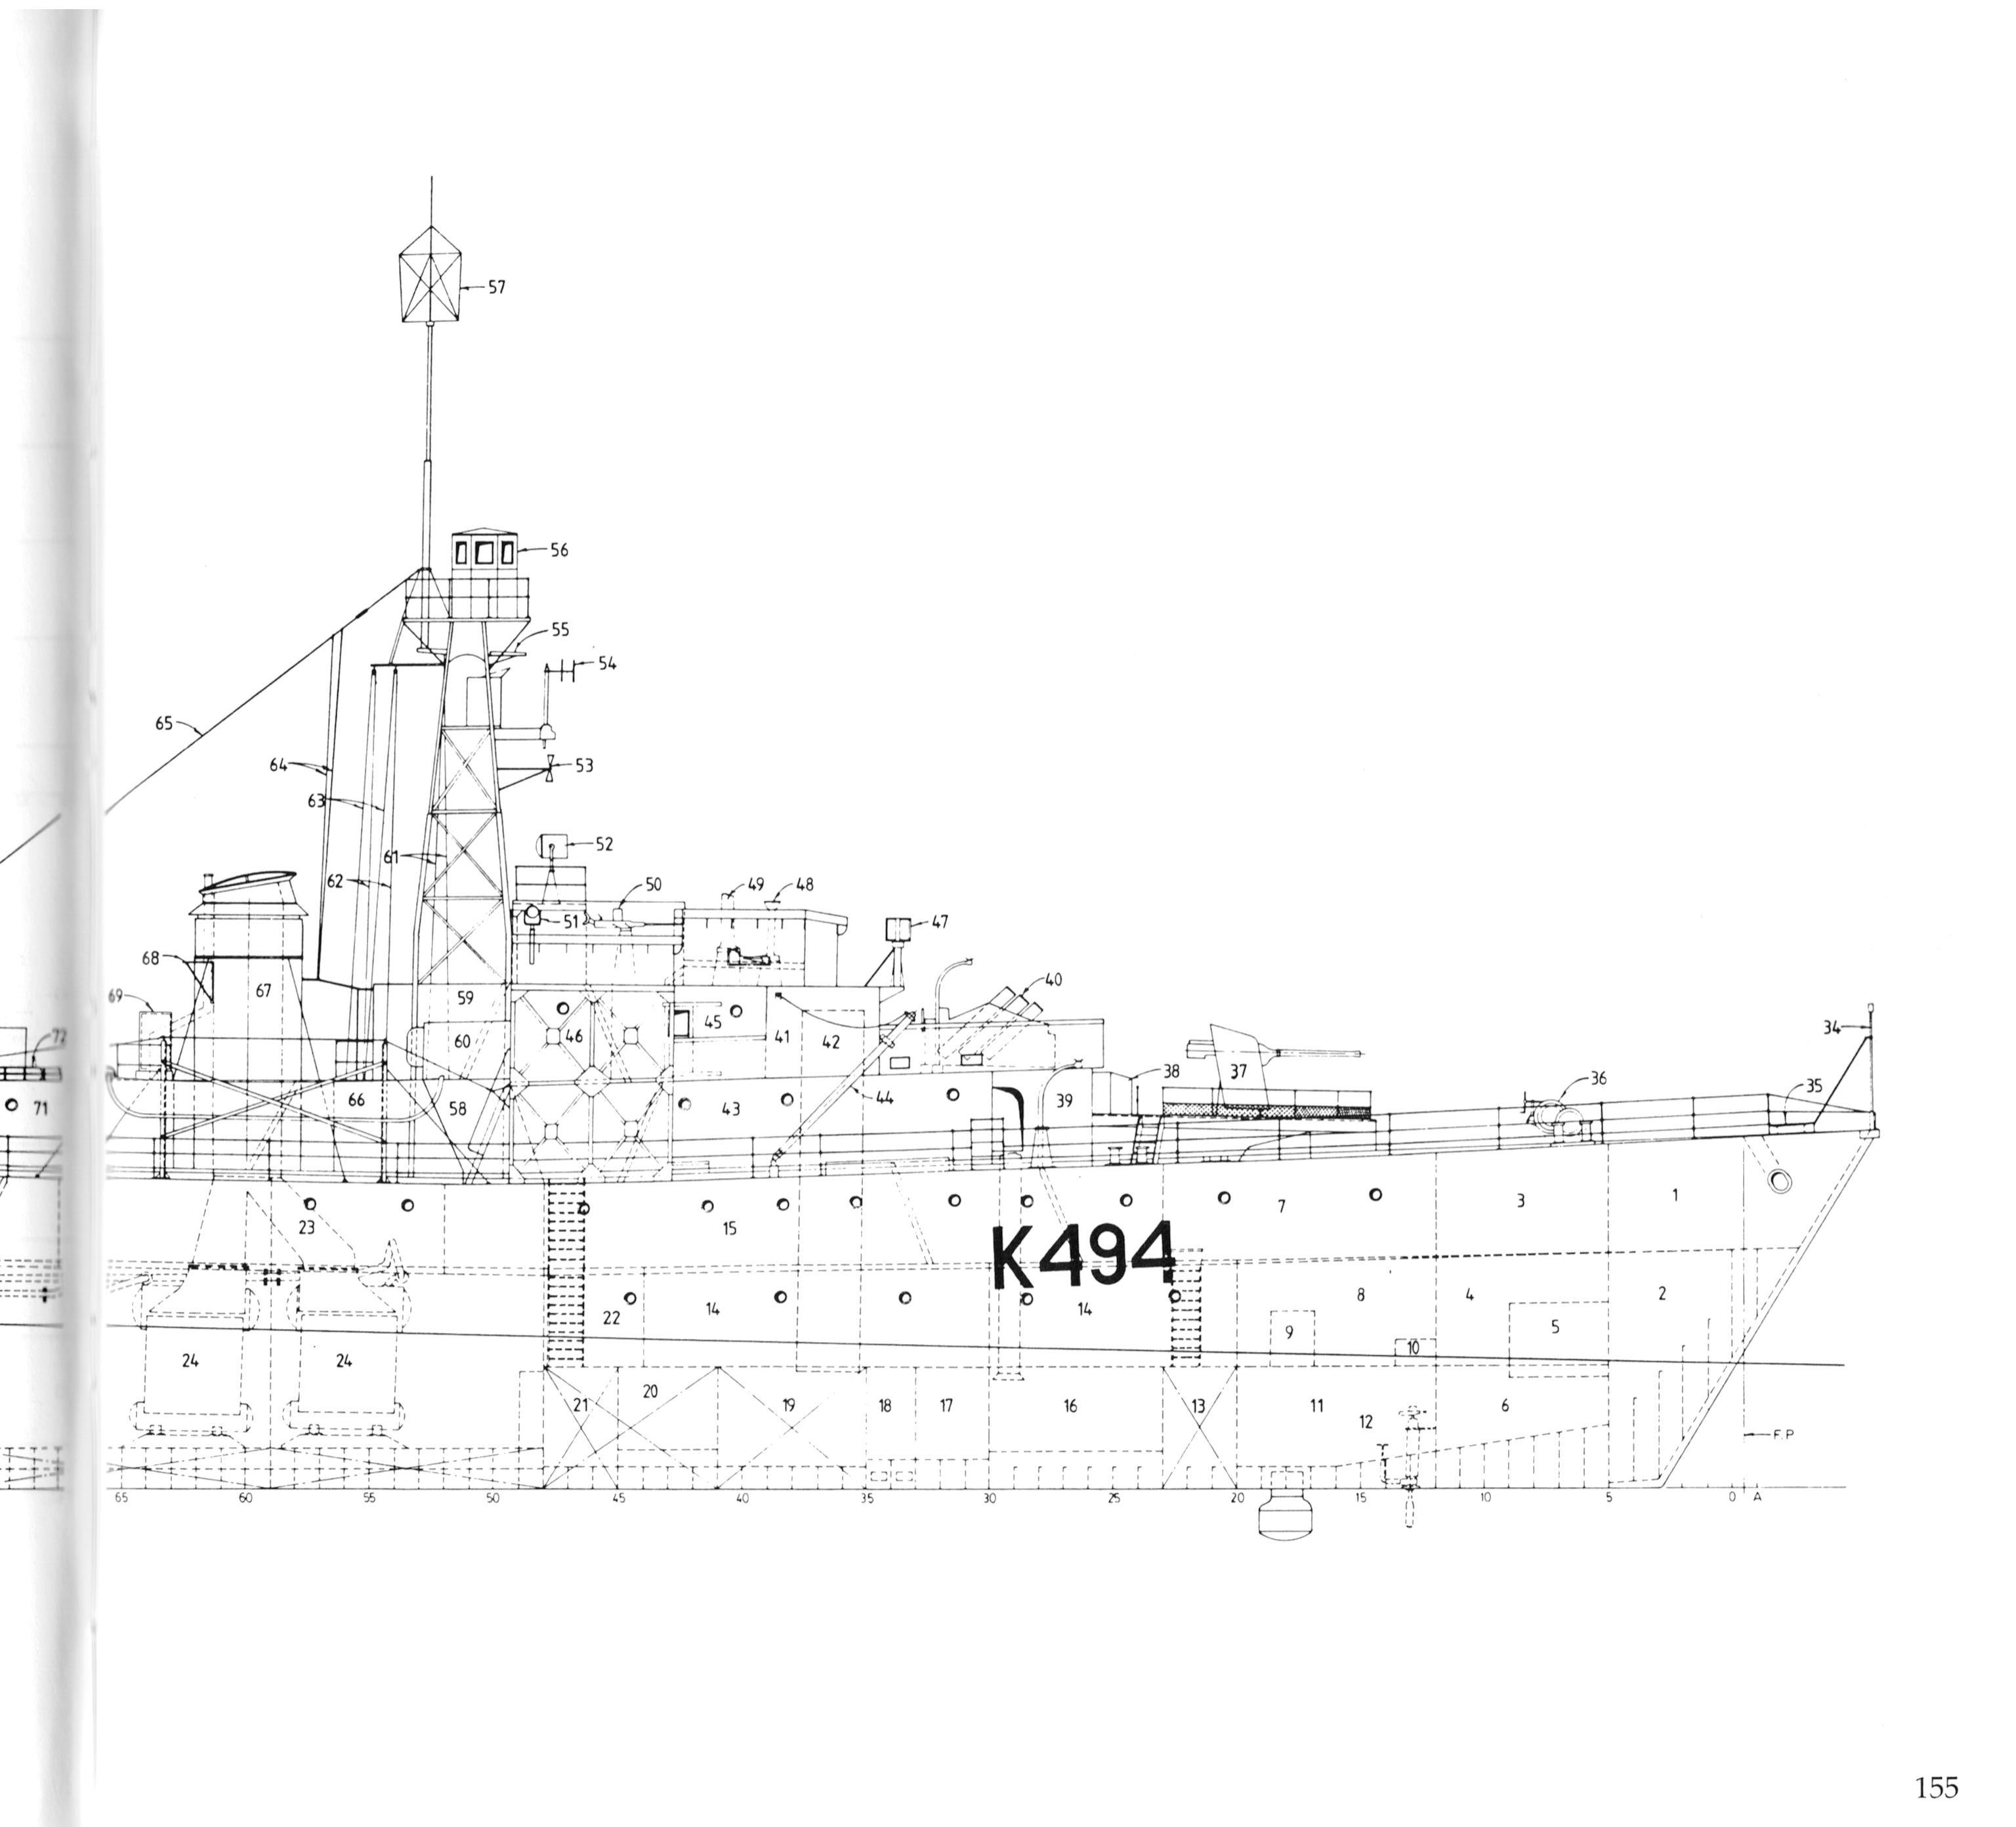 Anatomy of the Ship  - The Flower Class Corvette Agassiz_02.jpg